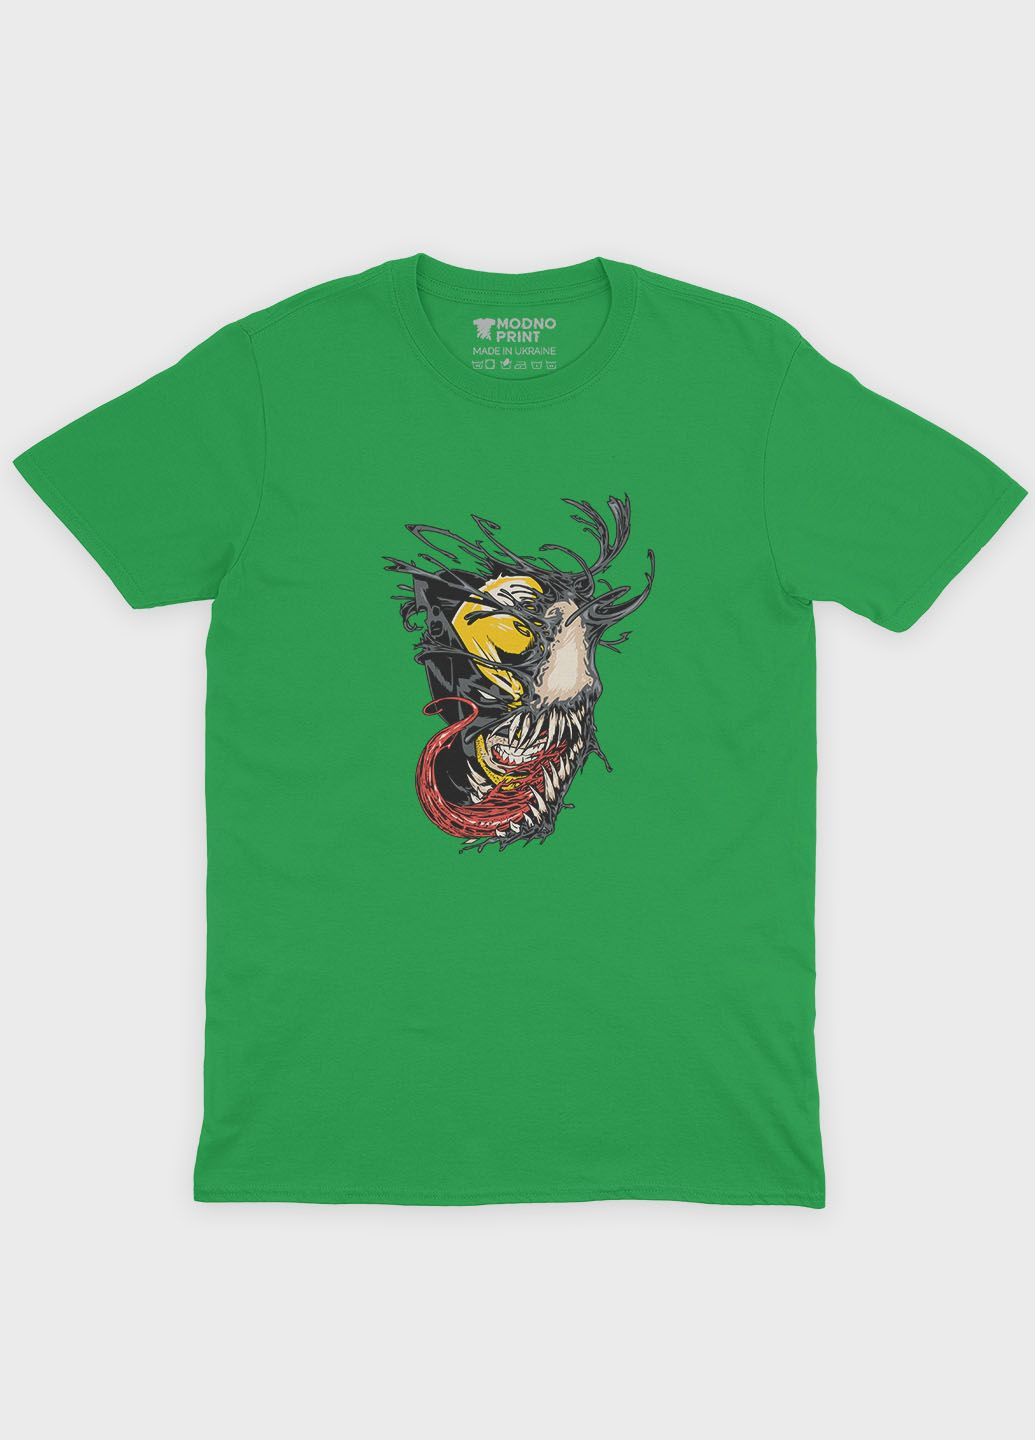 Зелена демісезонна футболка для хлопчика з принтом суперзлодія - веном (ts001-1-keg-006-013-003-b) Modno